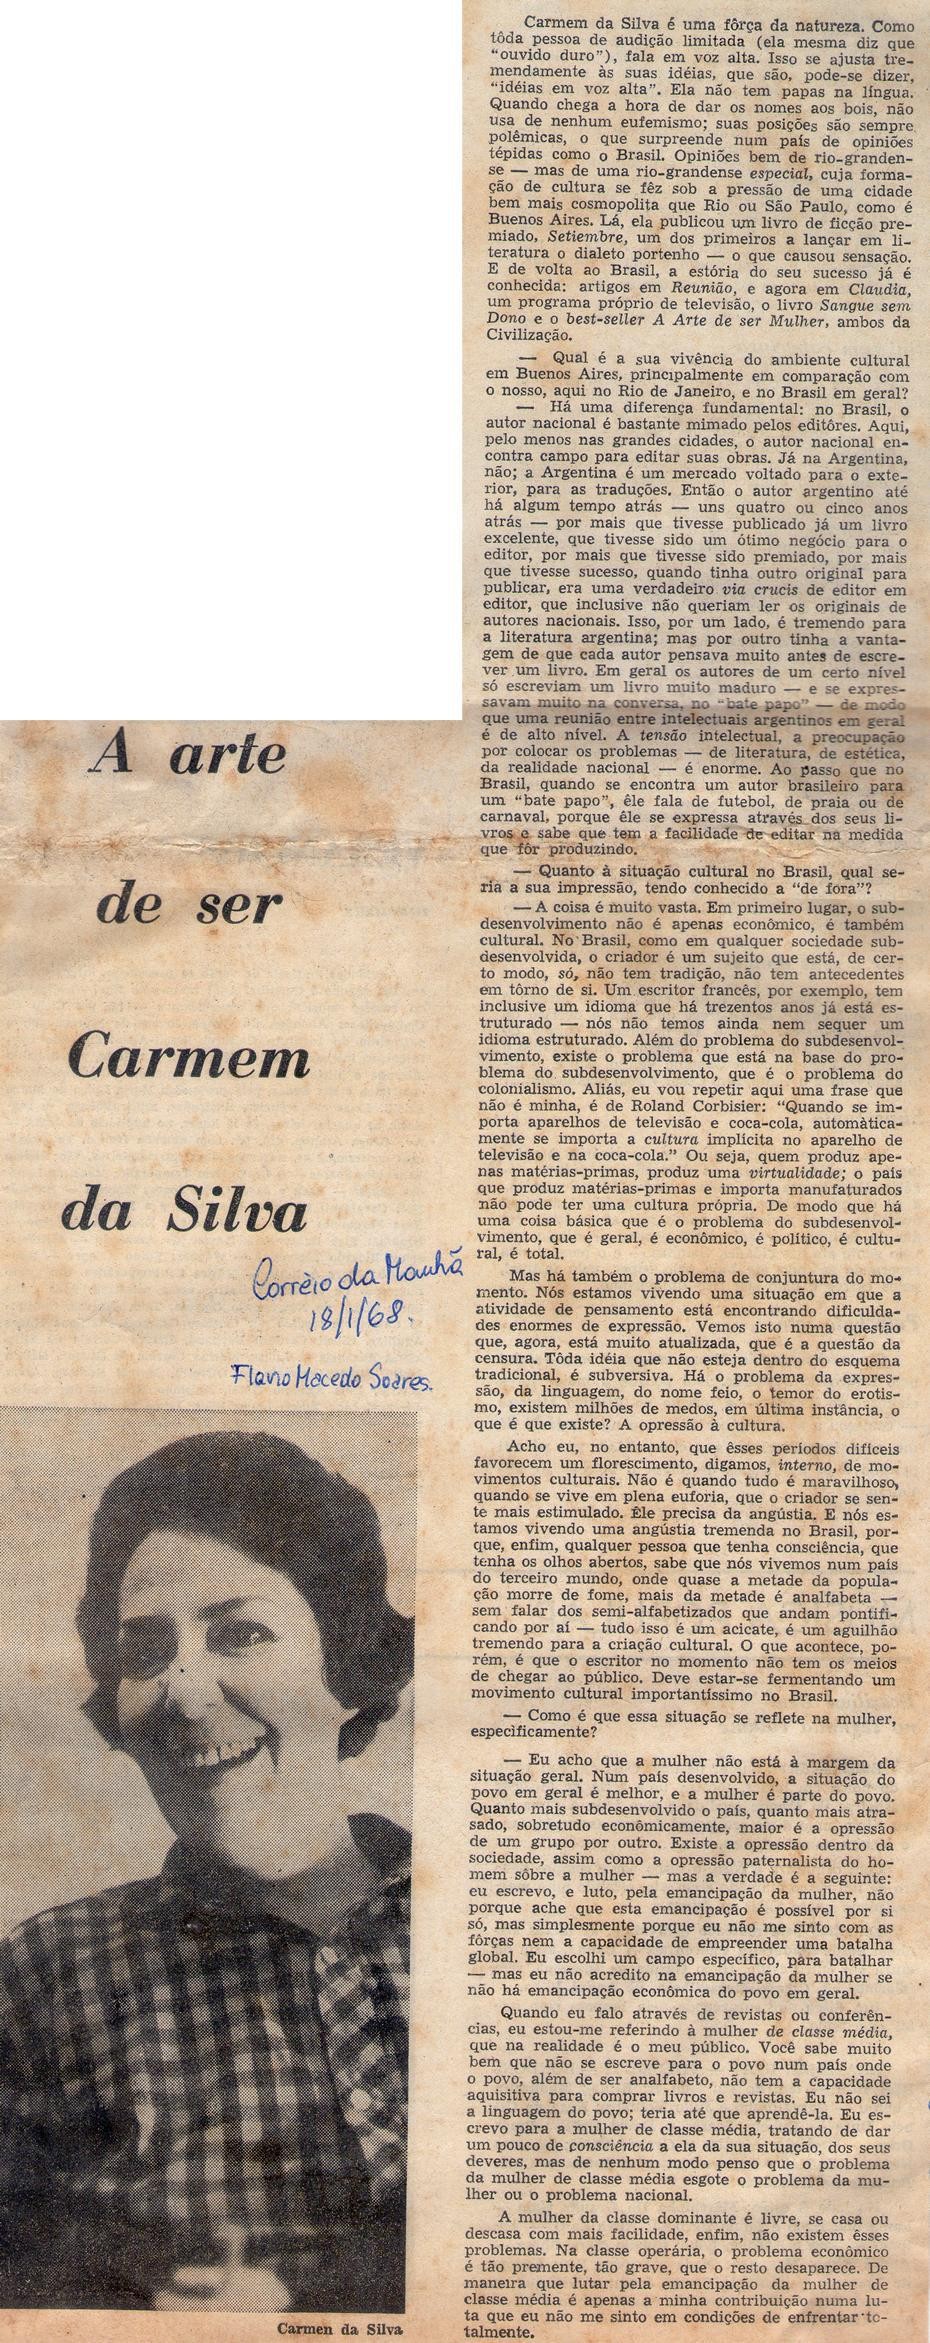 18 de Janeiro de 1968 - Correio da Manhã. A arte de ser Carmem da Silva.